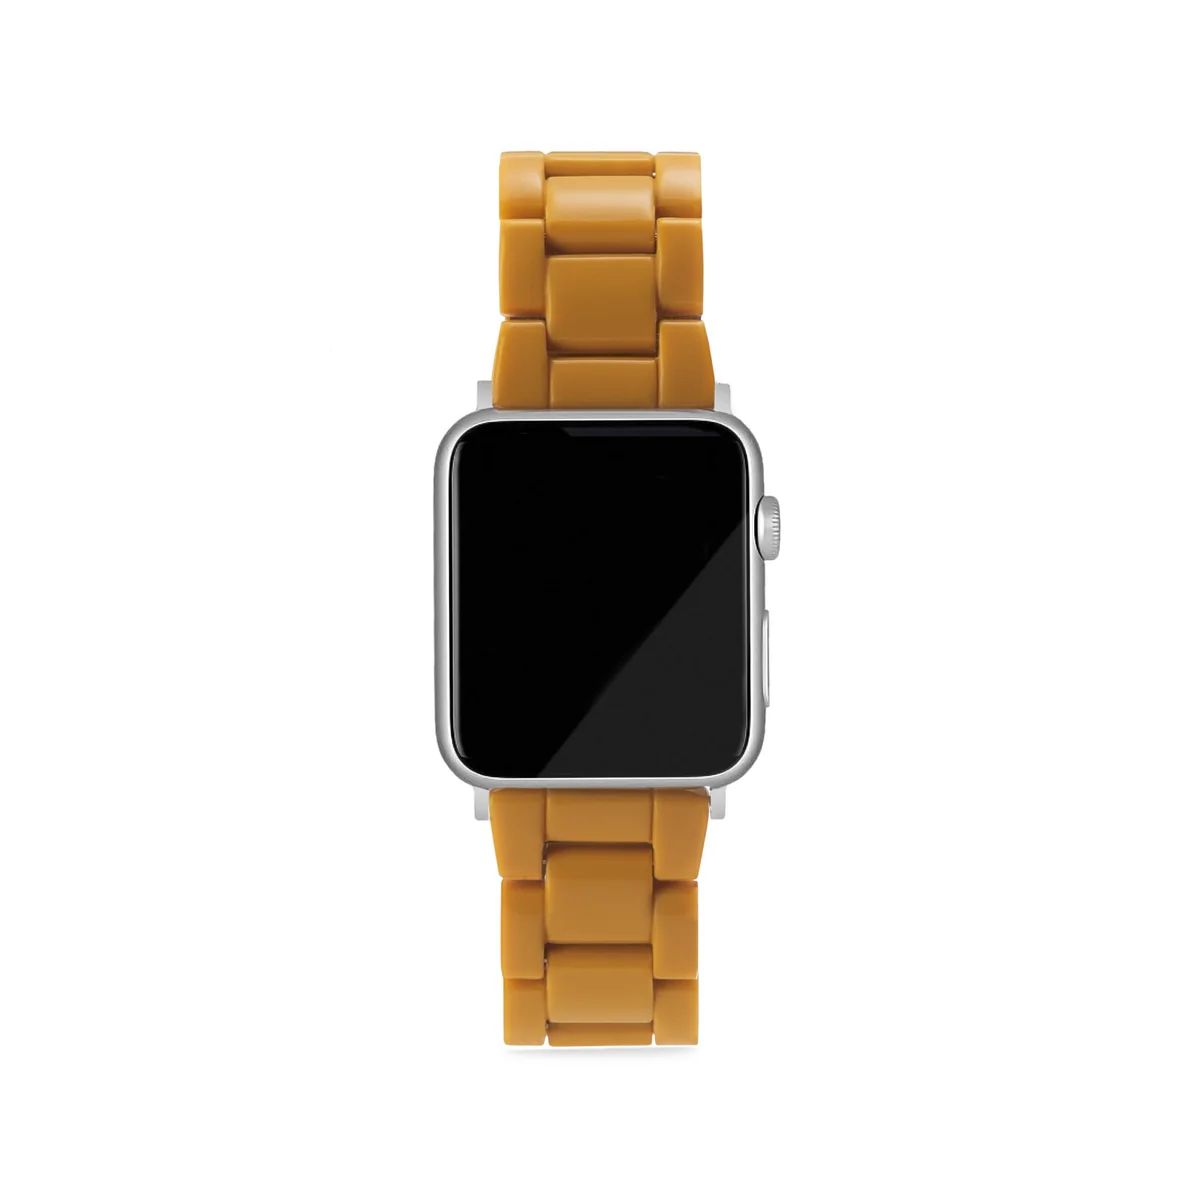 Apple Watch Band in Ochre | Machete